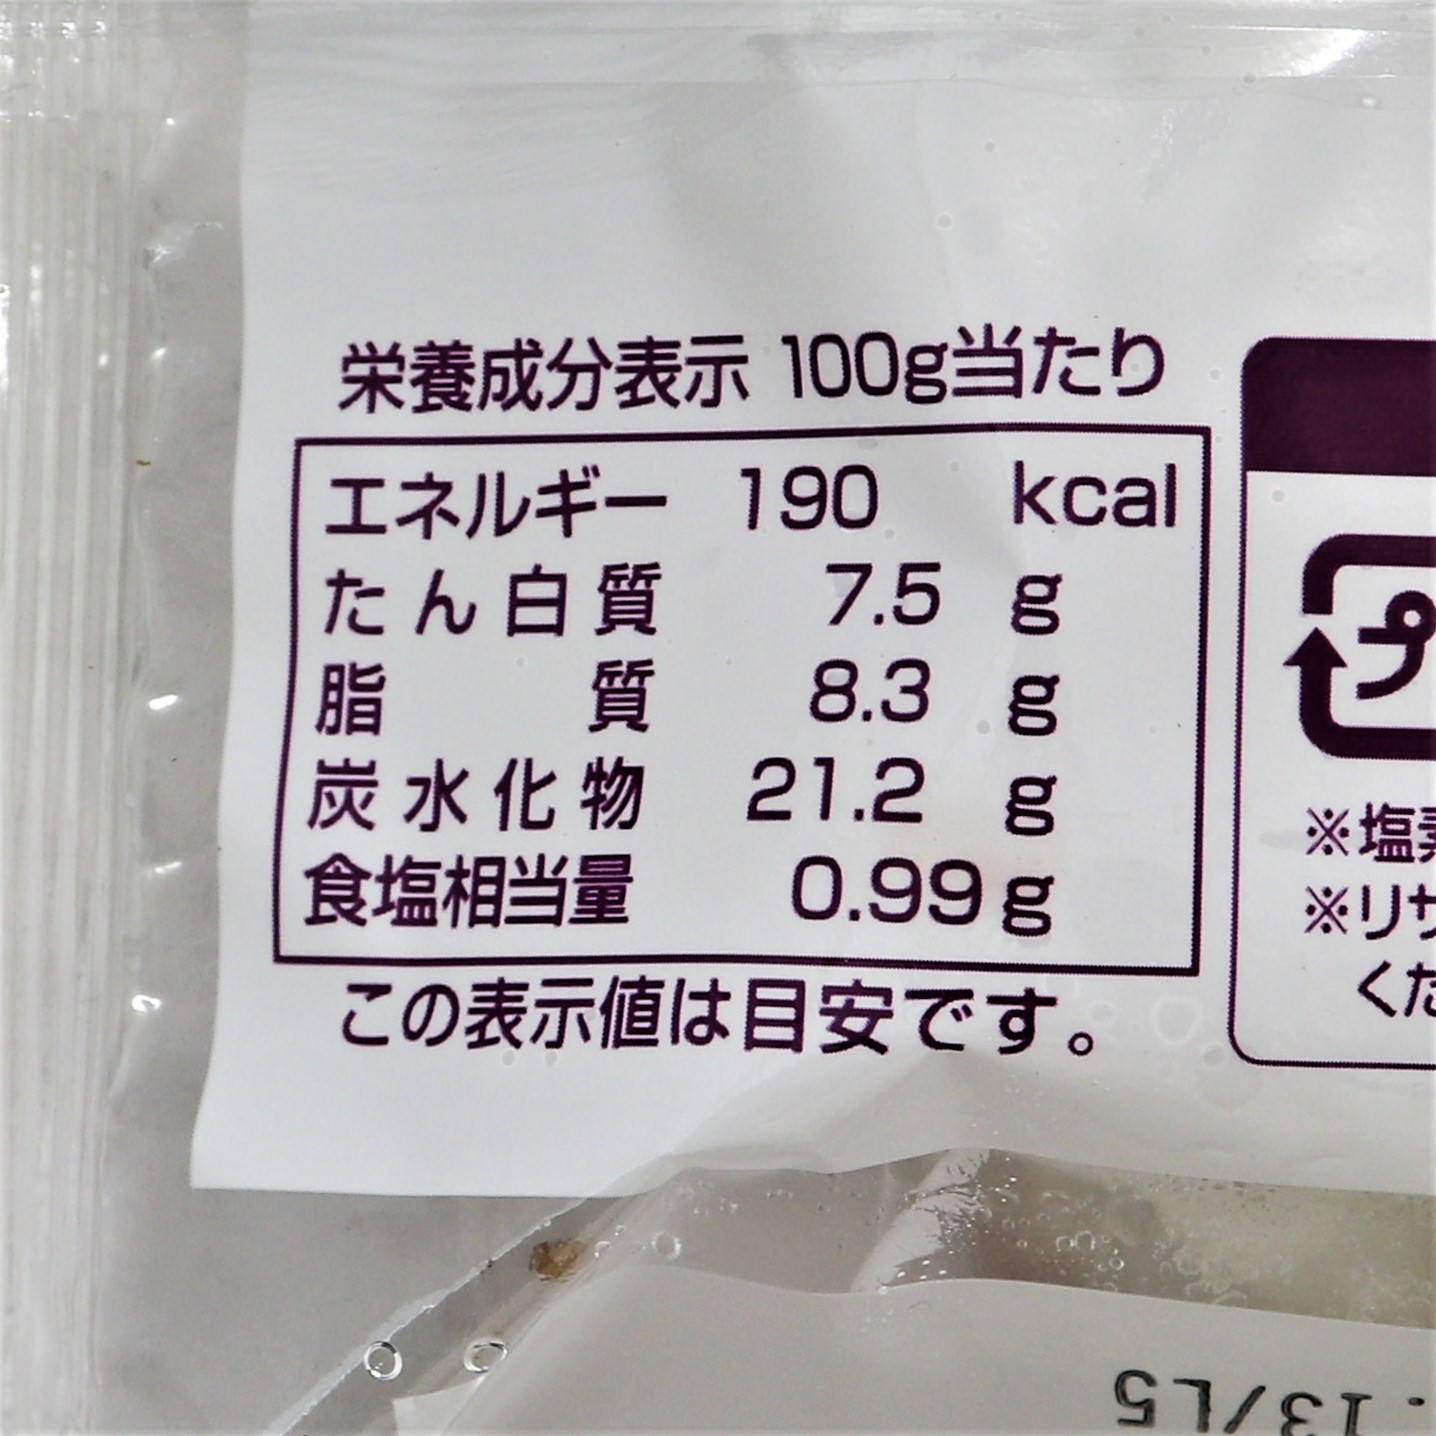 【業務用】味の素冷凍食品 レンジでも餃子 10個入